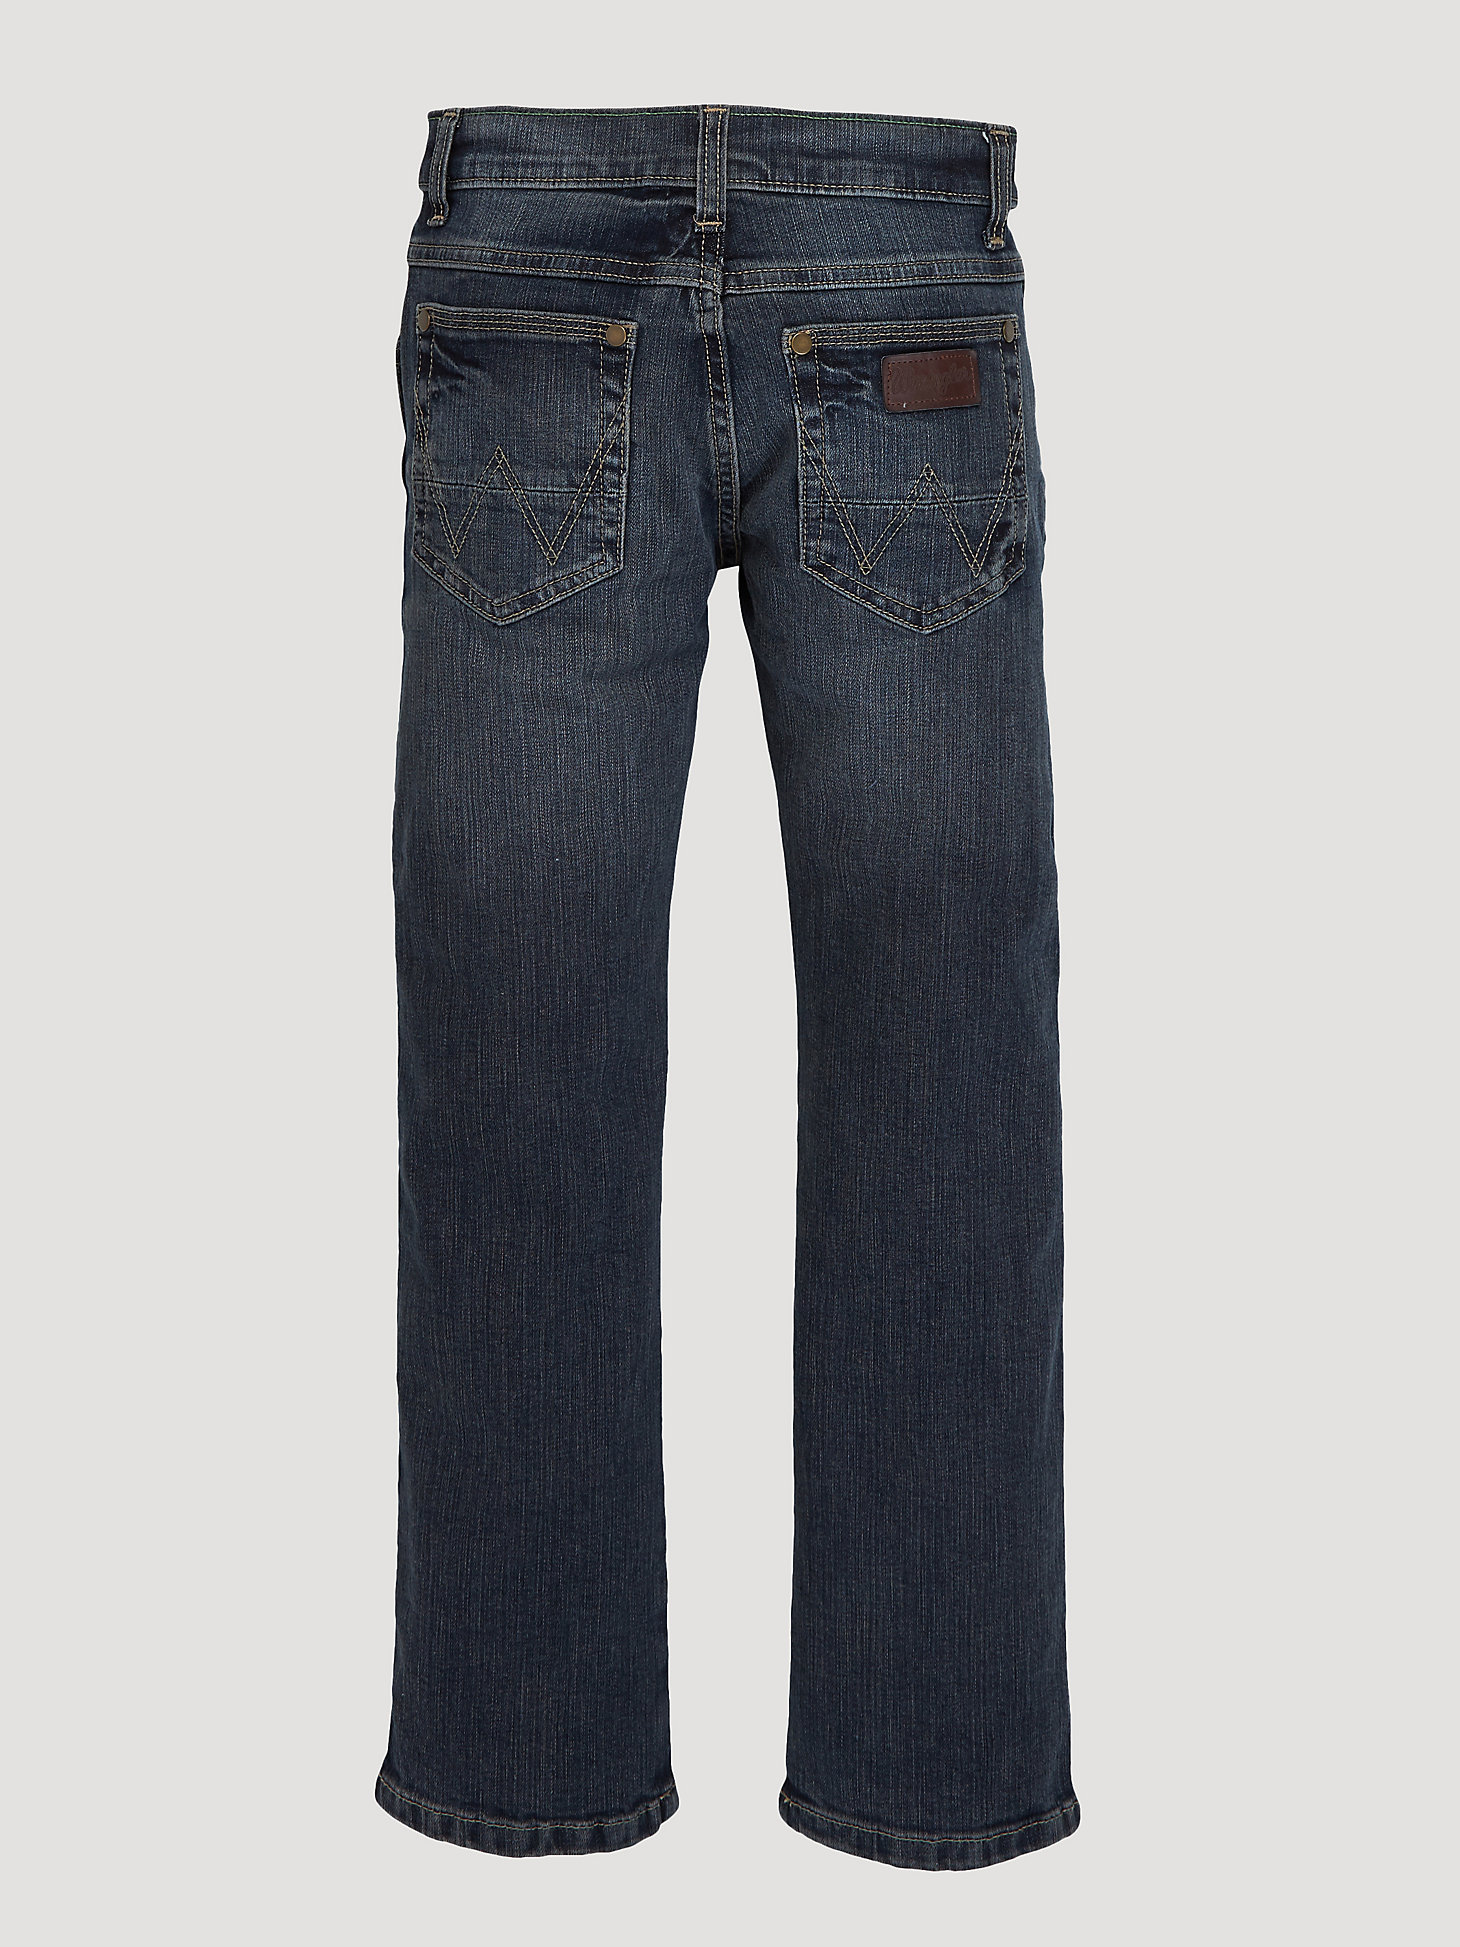 Boy's Wrangler Retro® Slim Straight Jean (8-18) in Jerome alternative view 4